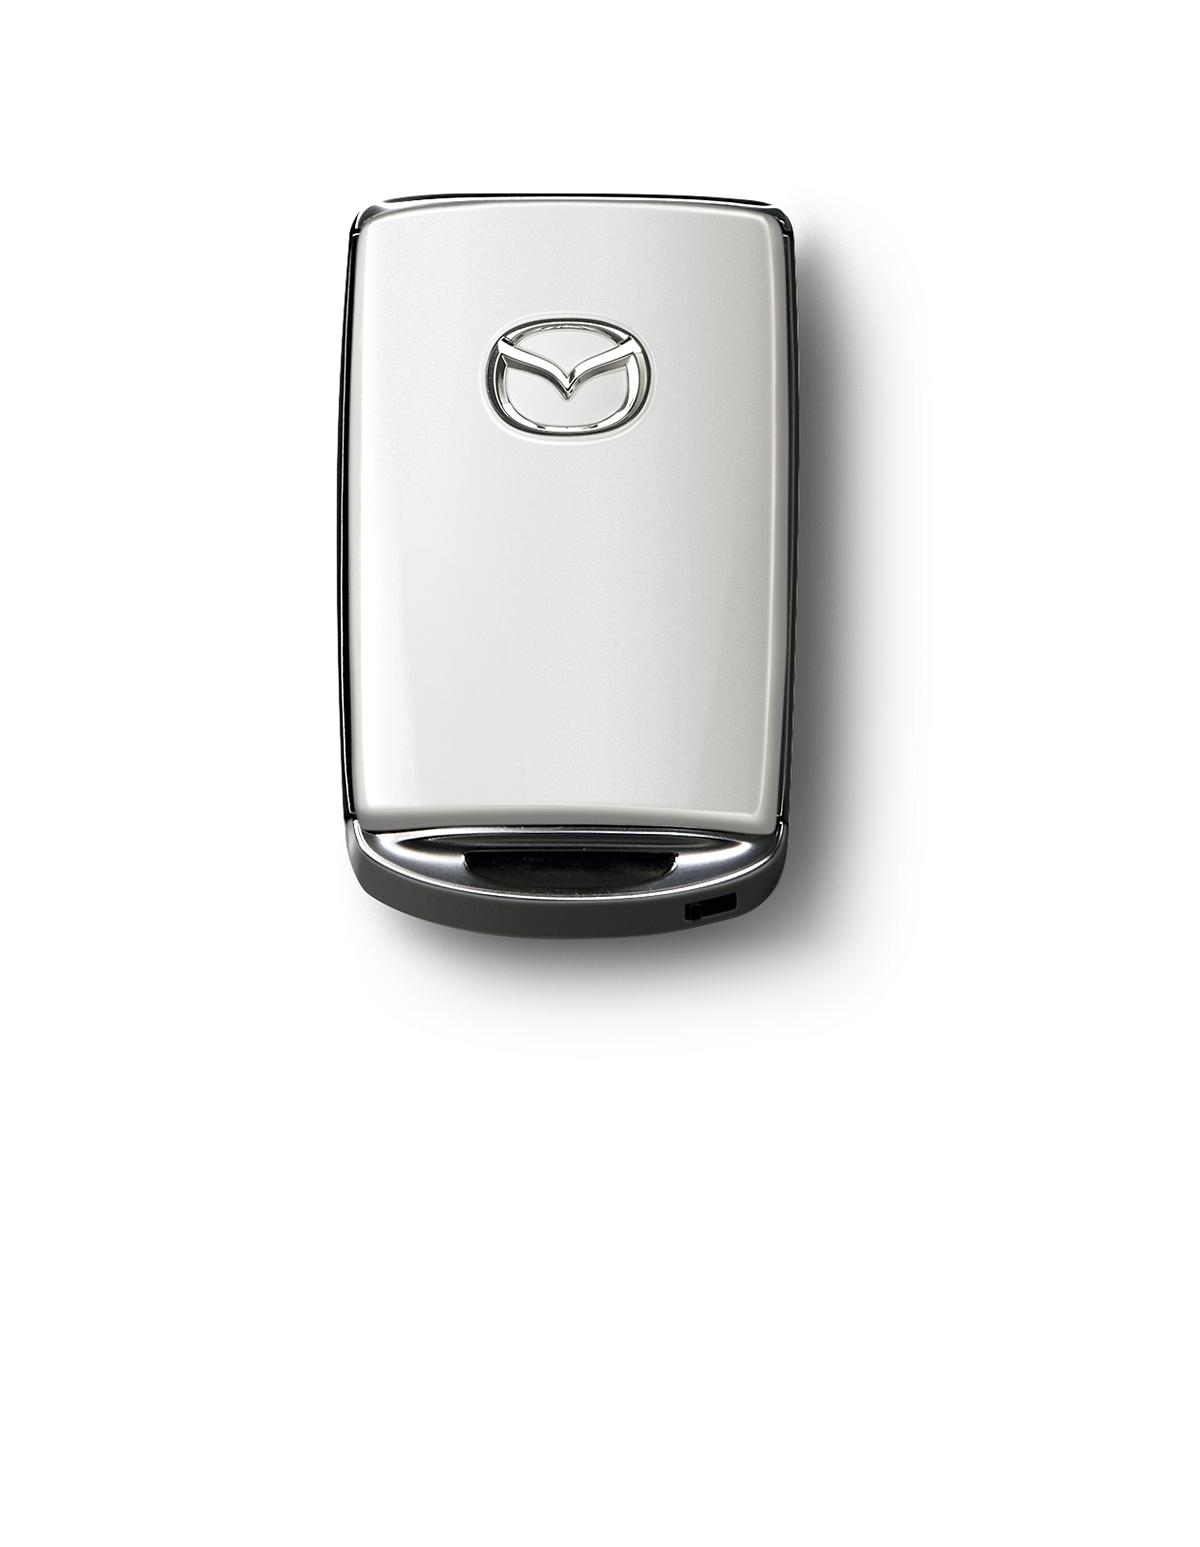 Autoschlüssel beim MAZDA-Leasing jetzt auch in Wagenfarbe, Mazda, Blog